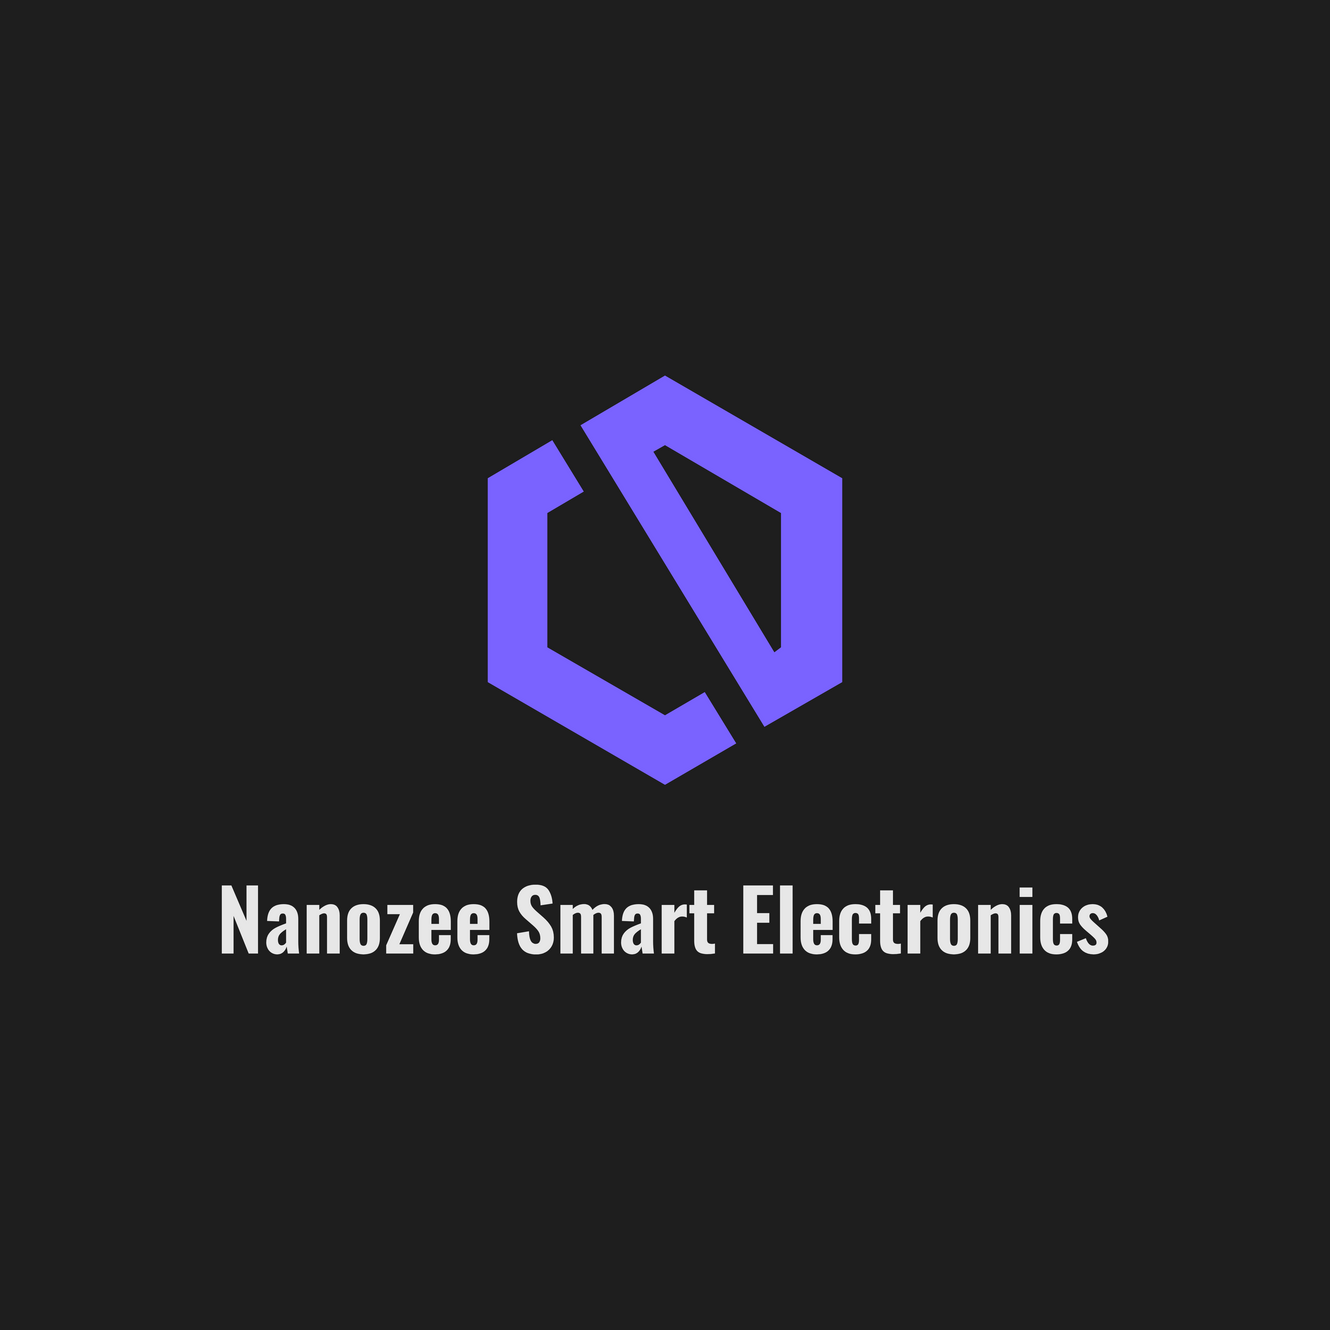 www.nanozee.com